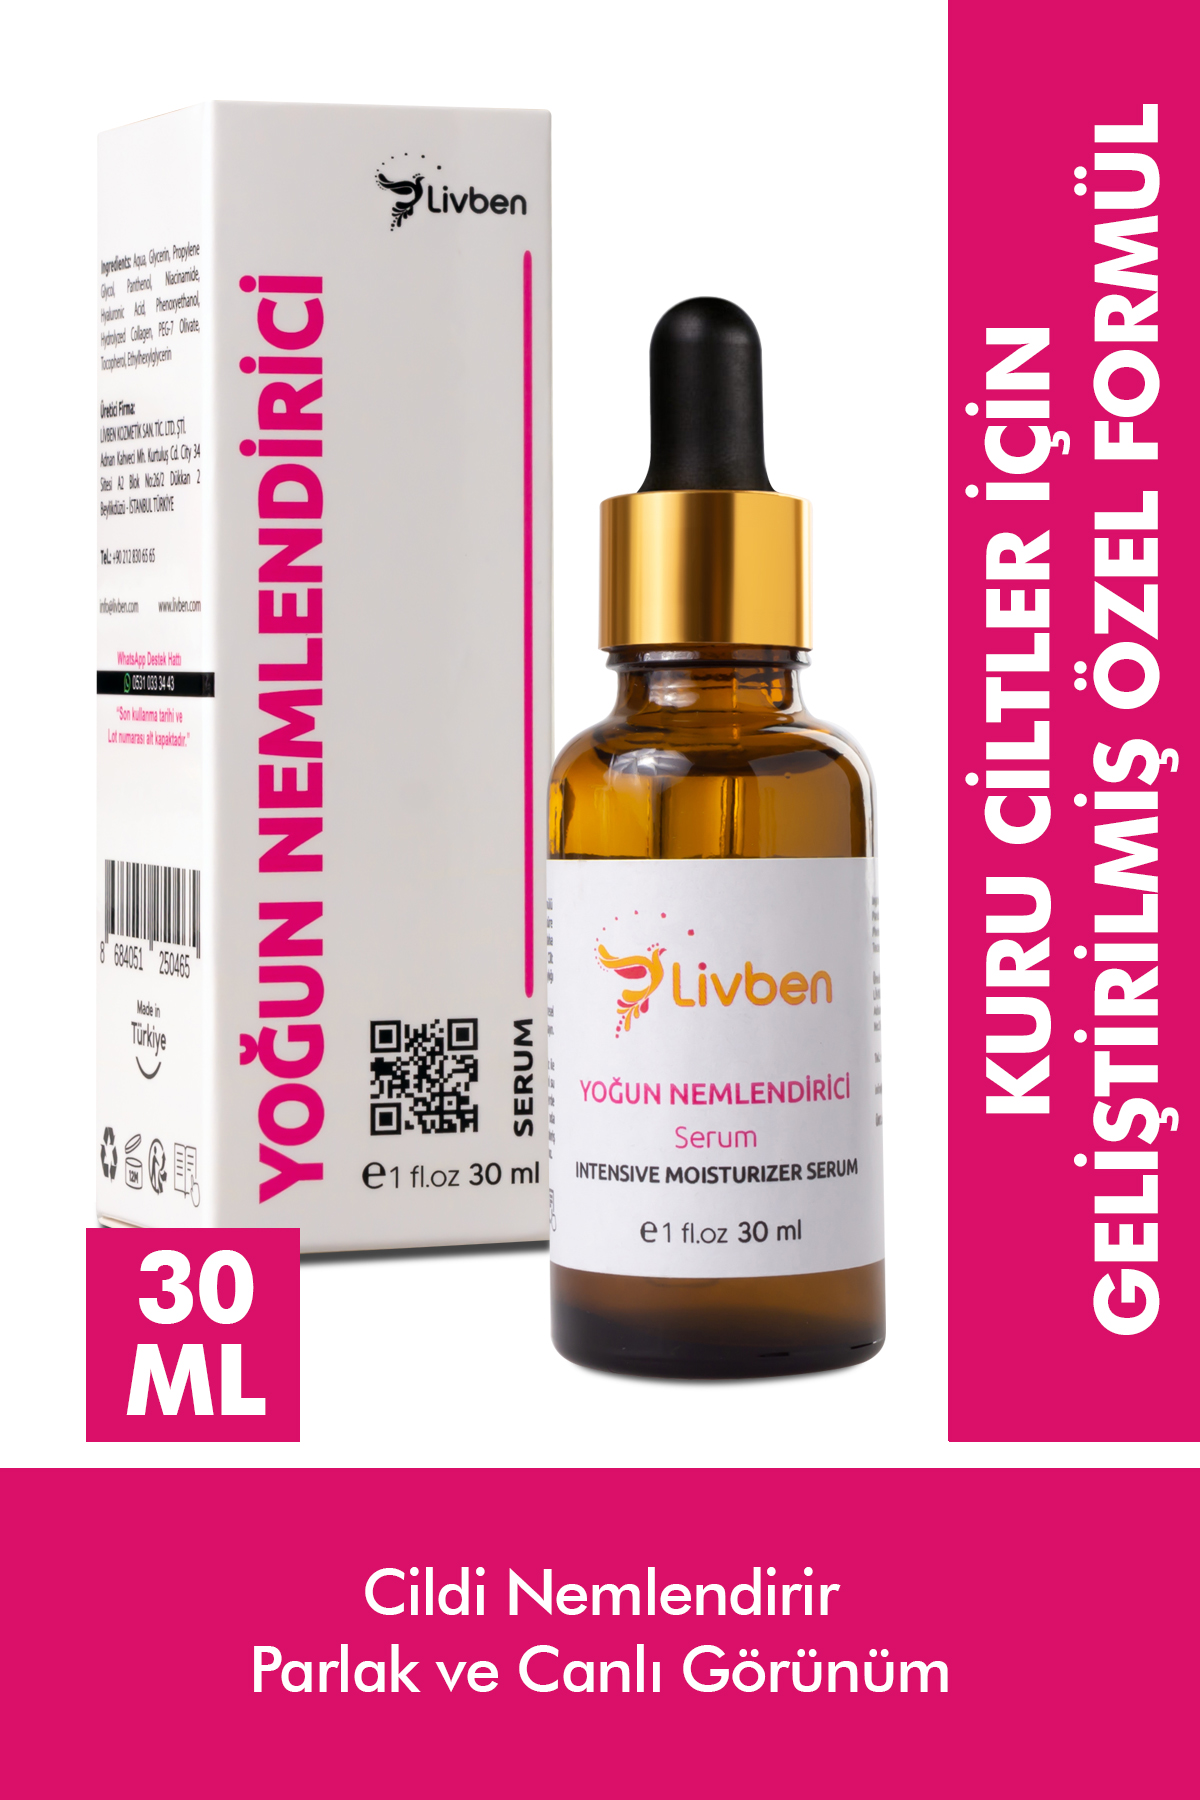 Livben ® Canlandırıcı Yoğun Nemlendirici Cilt Bakım Serumu 30 Ml ve Yoğun Nemlendirici Krem 100 Ml